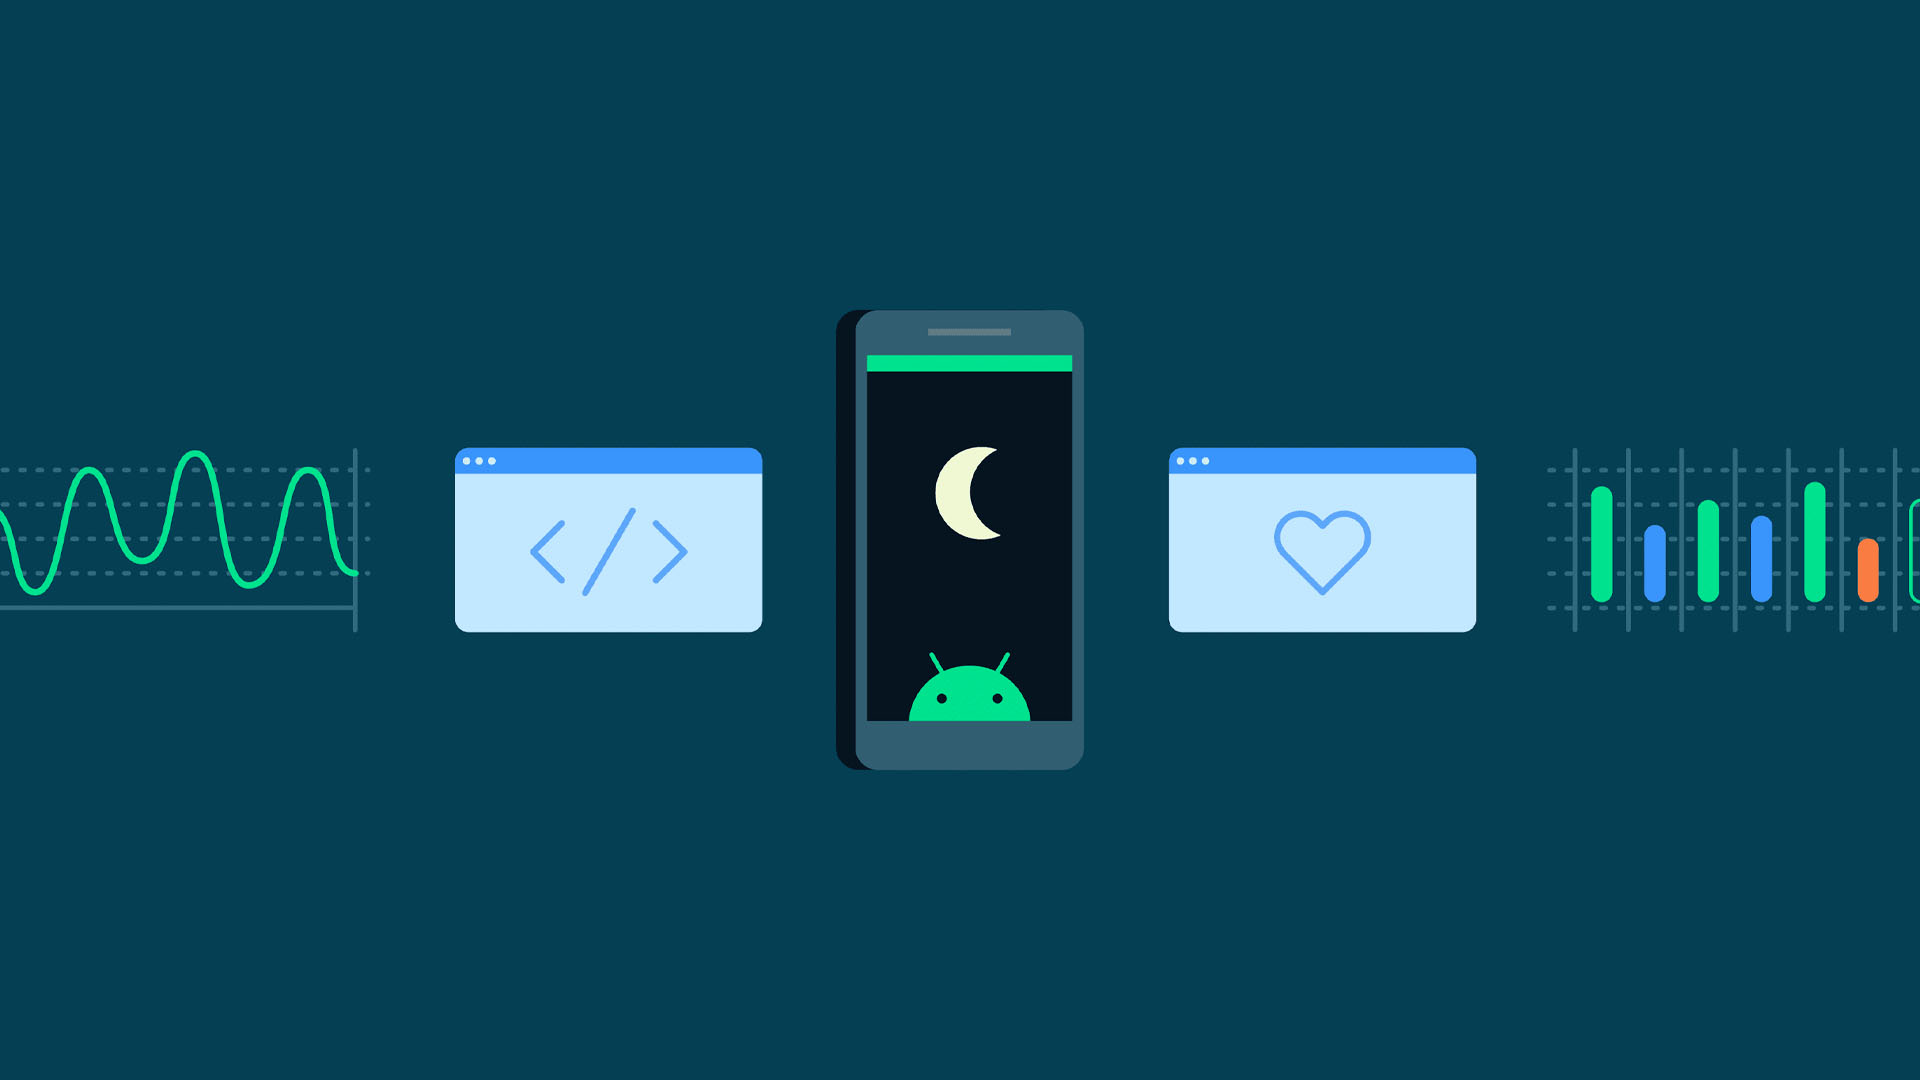 Google Memperkenalkan API  Untuk Aplikasi Pemantauan Tidur Dengan Penggunaan Kuasa Rendah